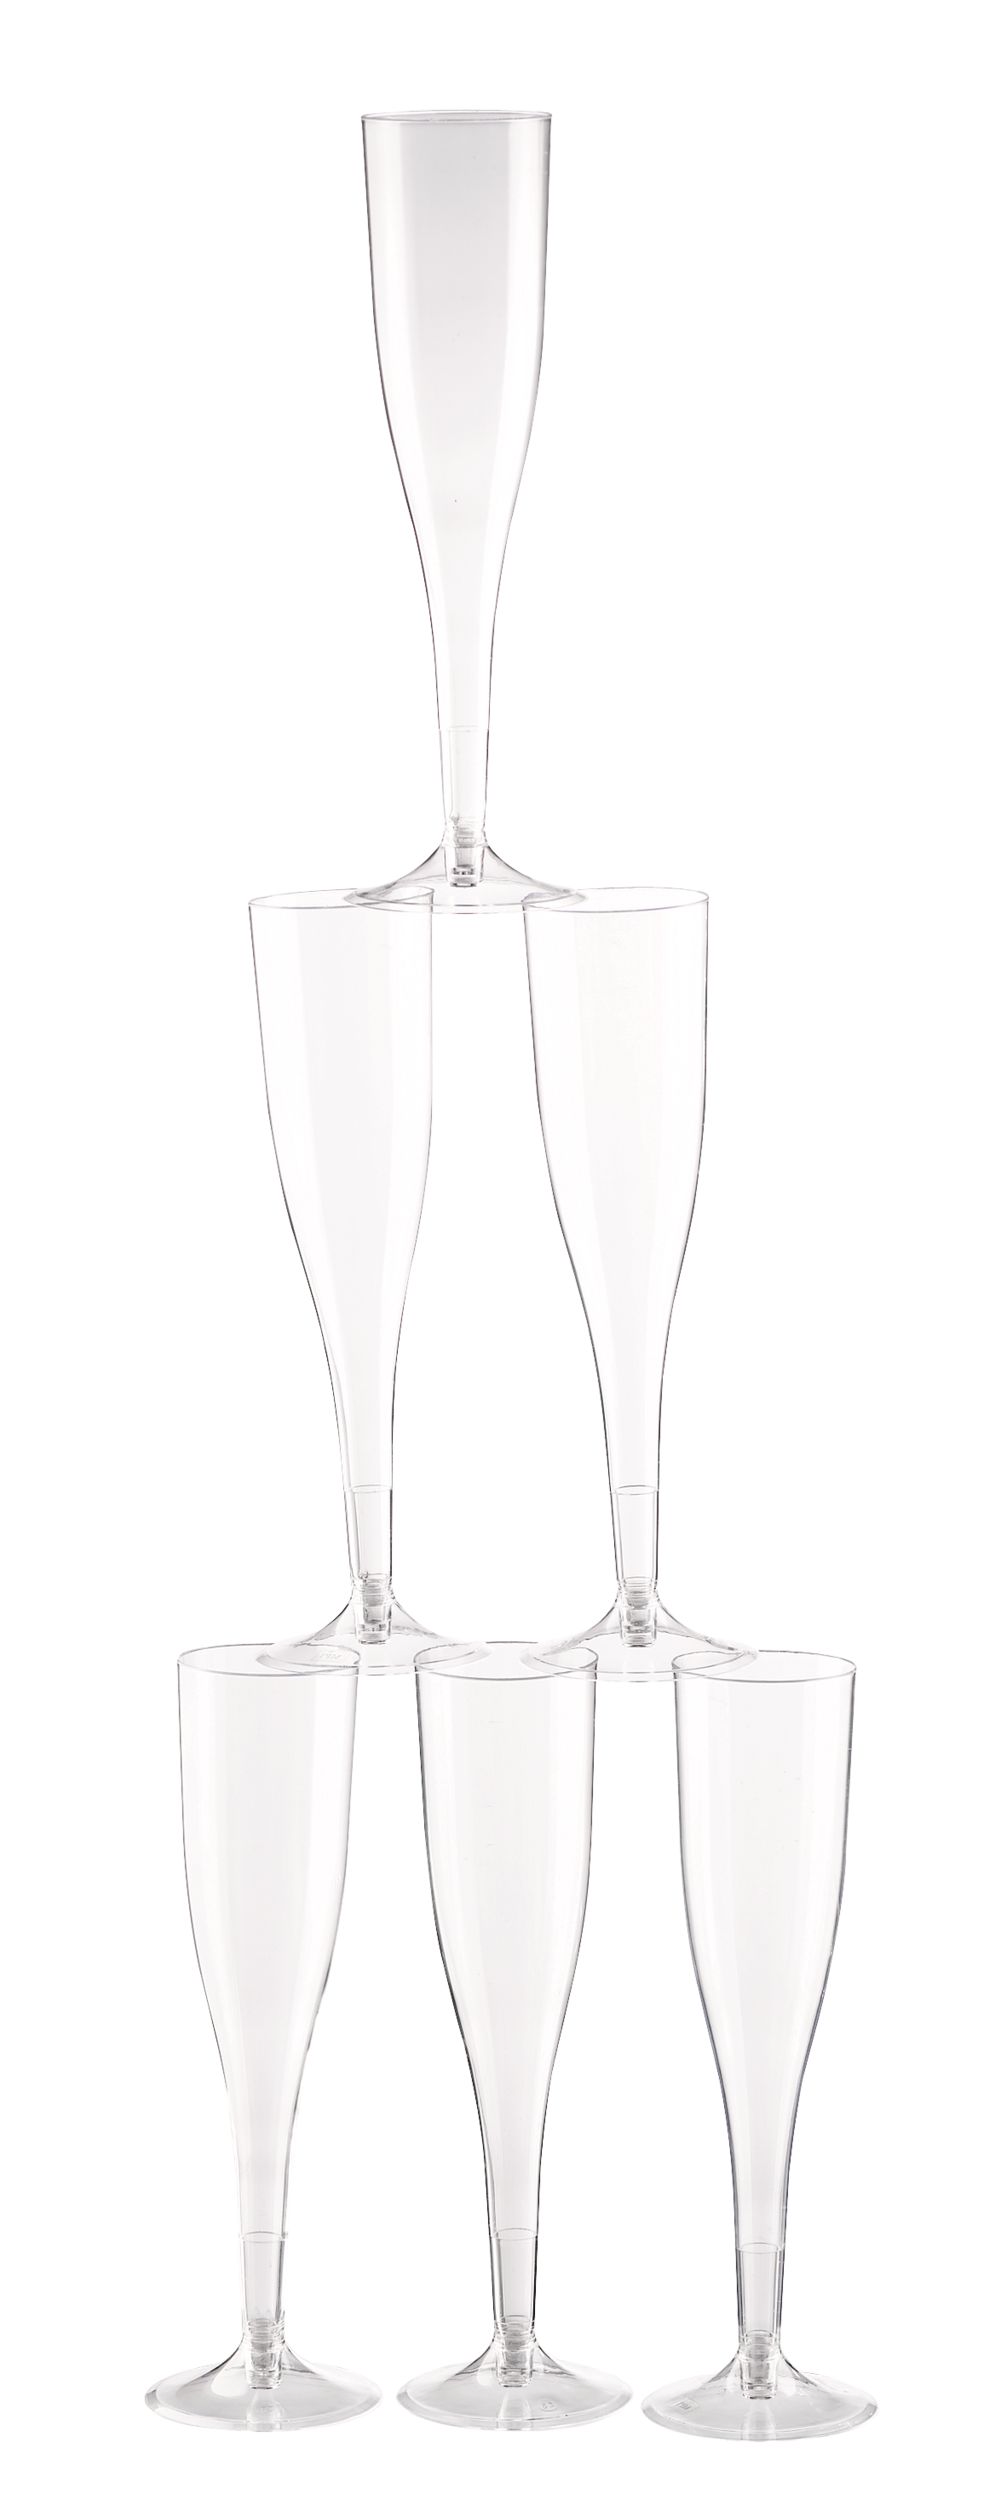 6pcs Plastic Champagne cocktail Flutes Disposable Cups flute champagne  plastique verrines jetable en plastique for Party